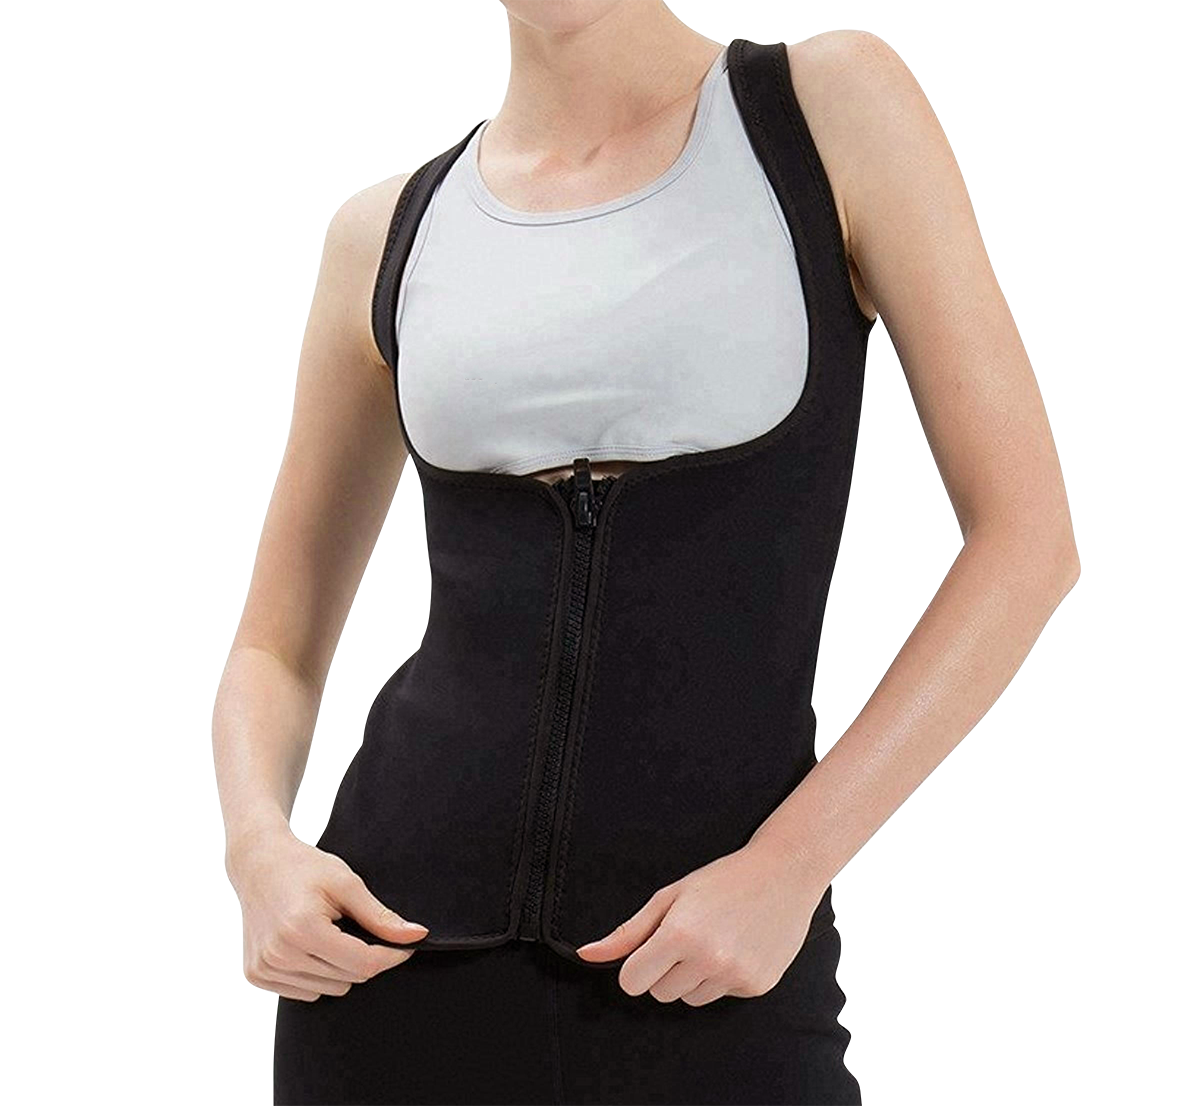 Women's Slimming Vest